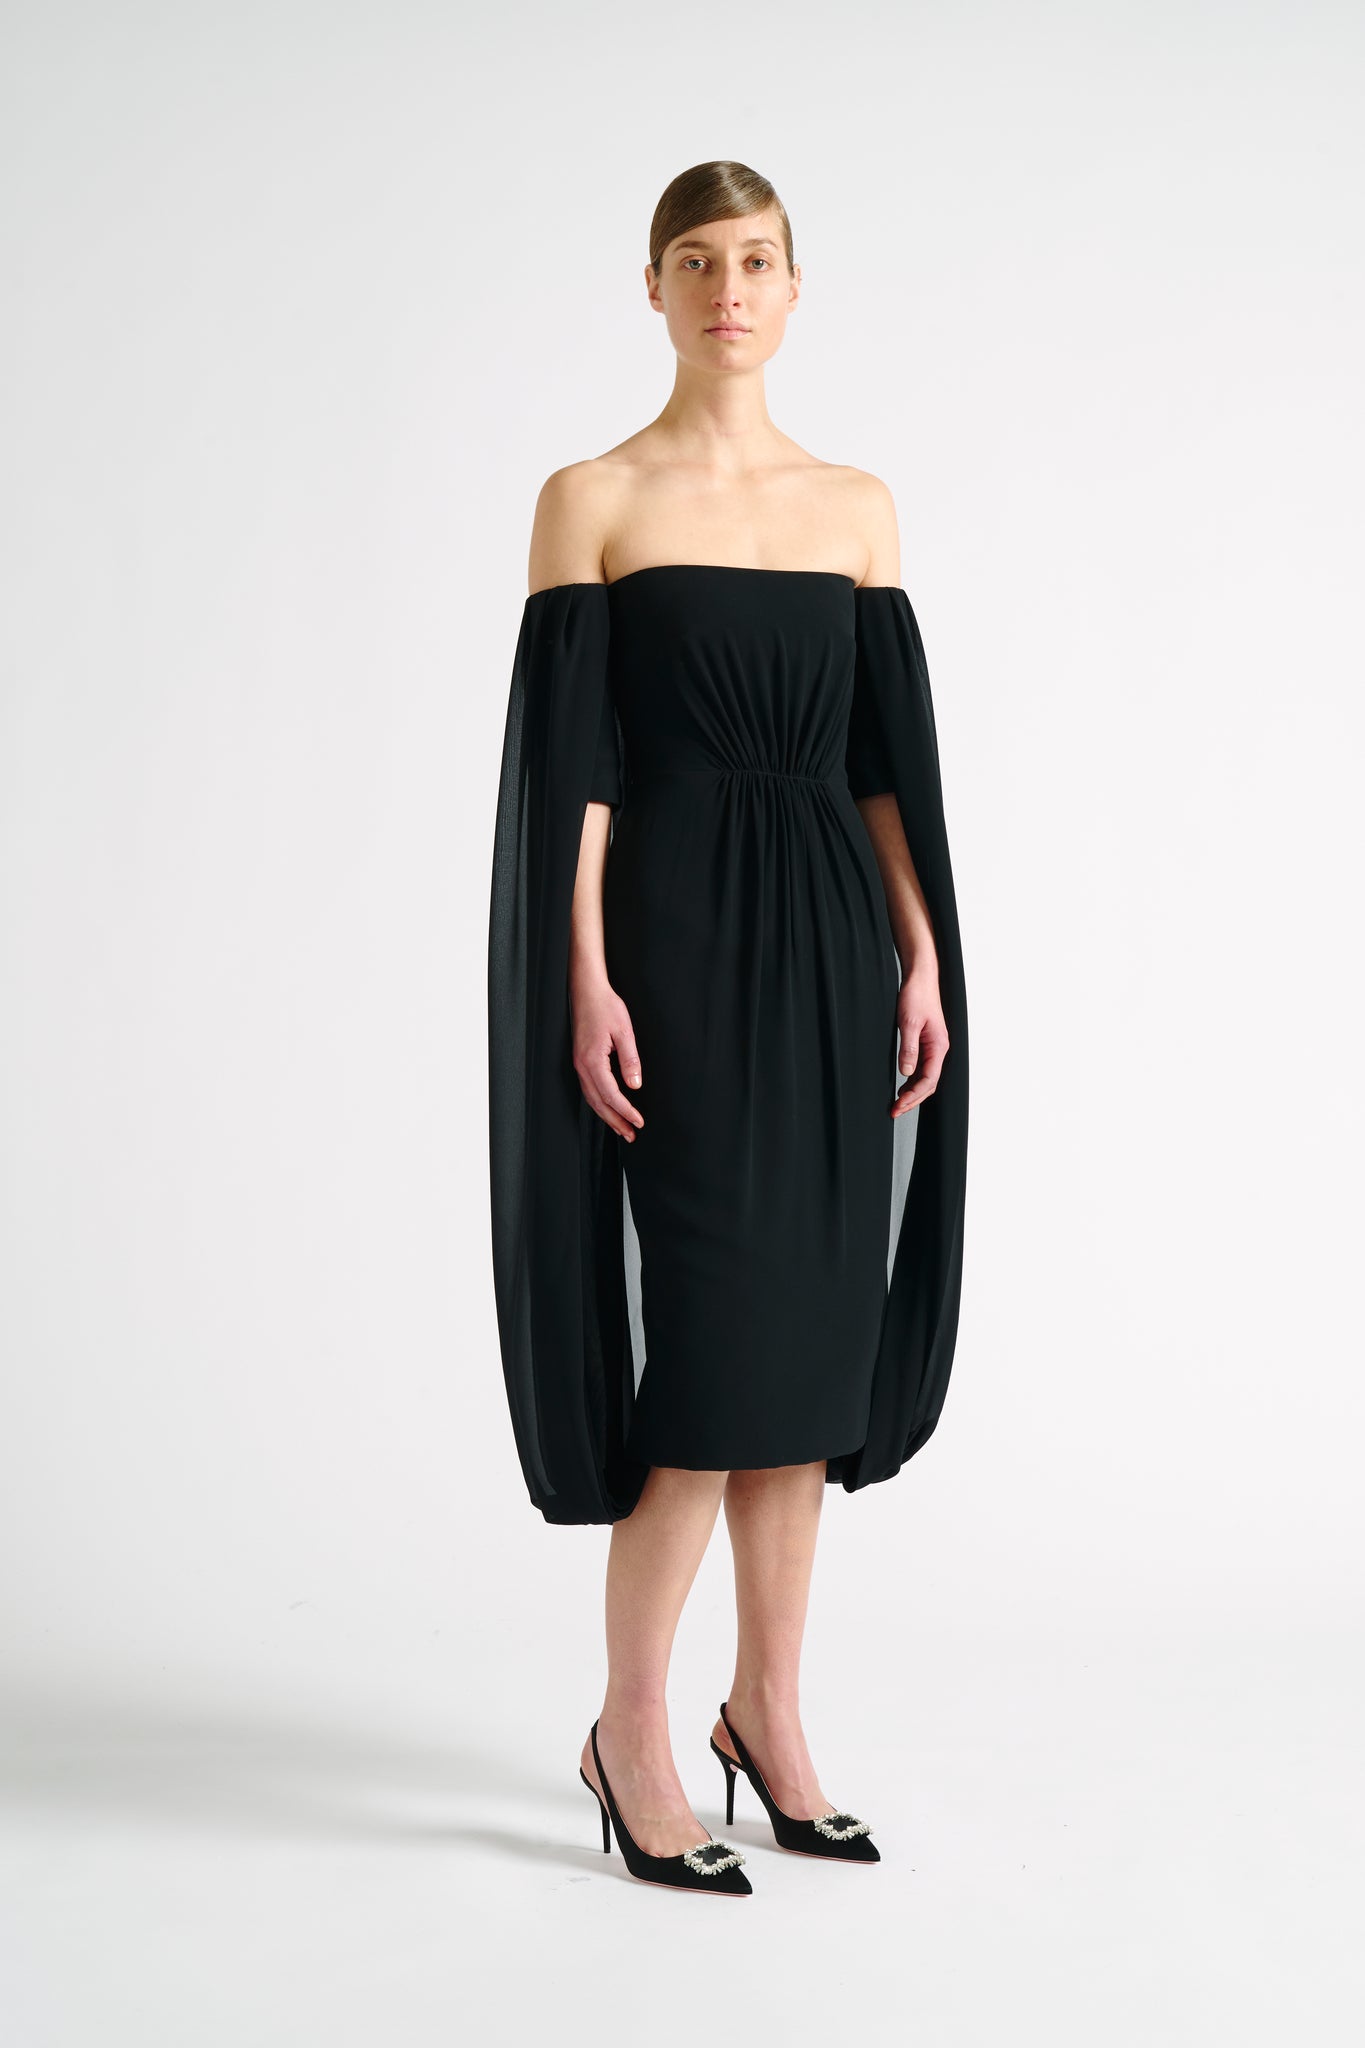 Mere Dress | Black Off-The-Shoulder Caped Back Cocktail Dress | Emilia Wickstead